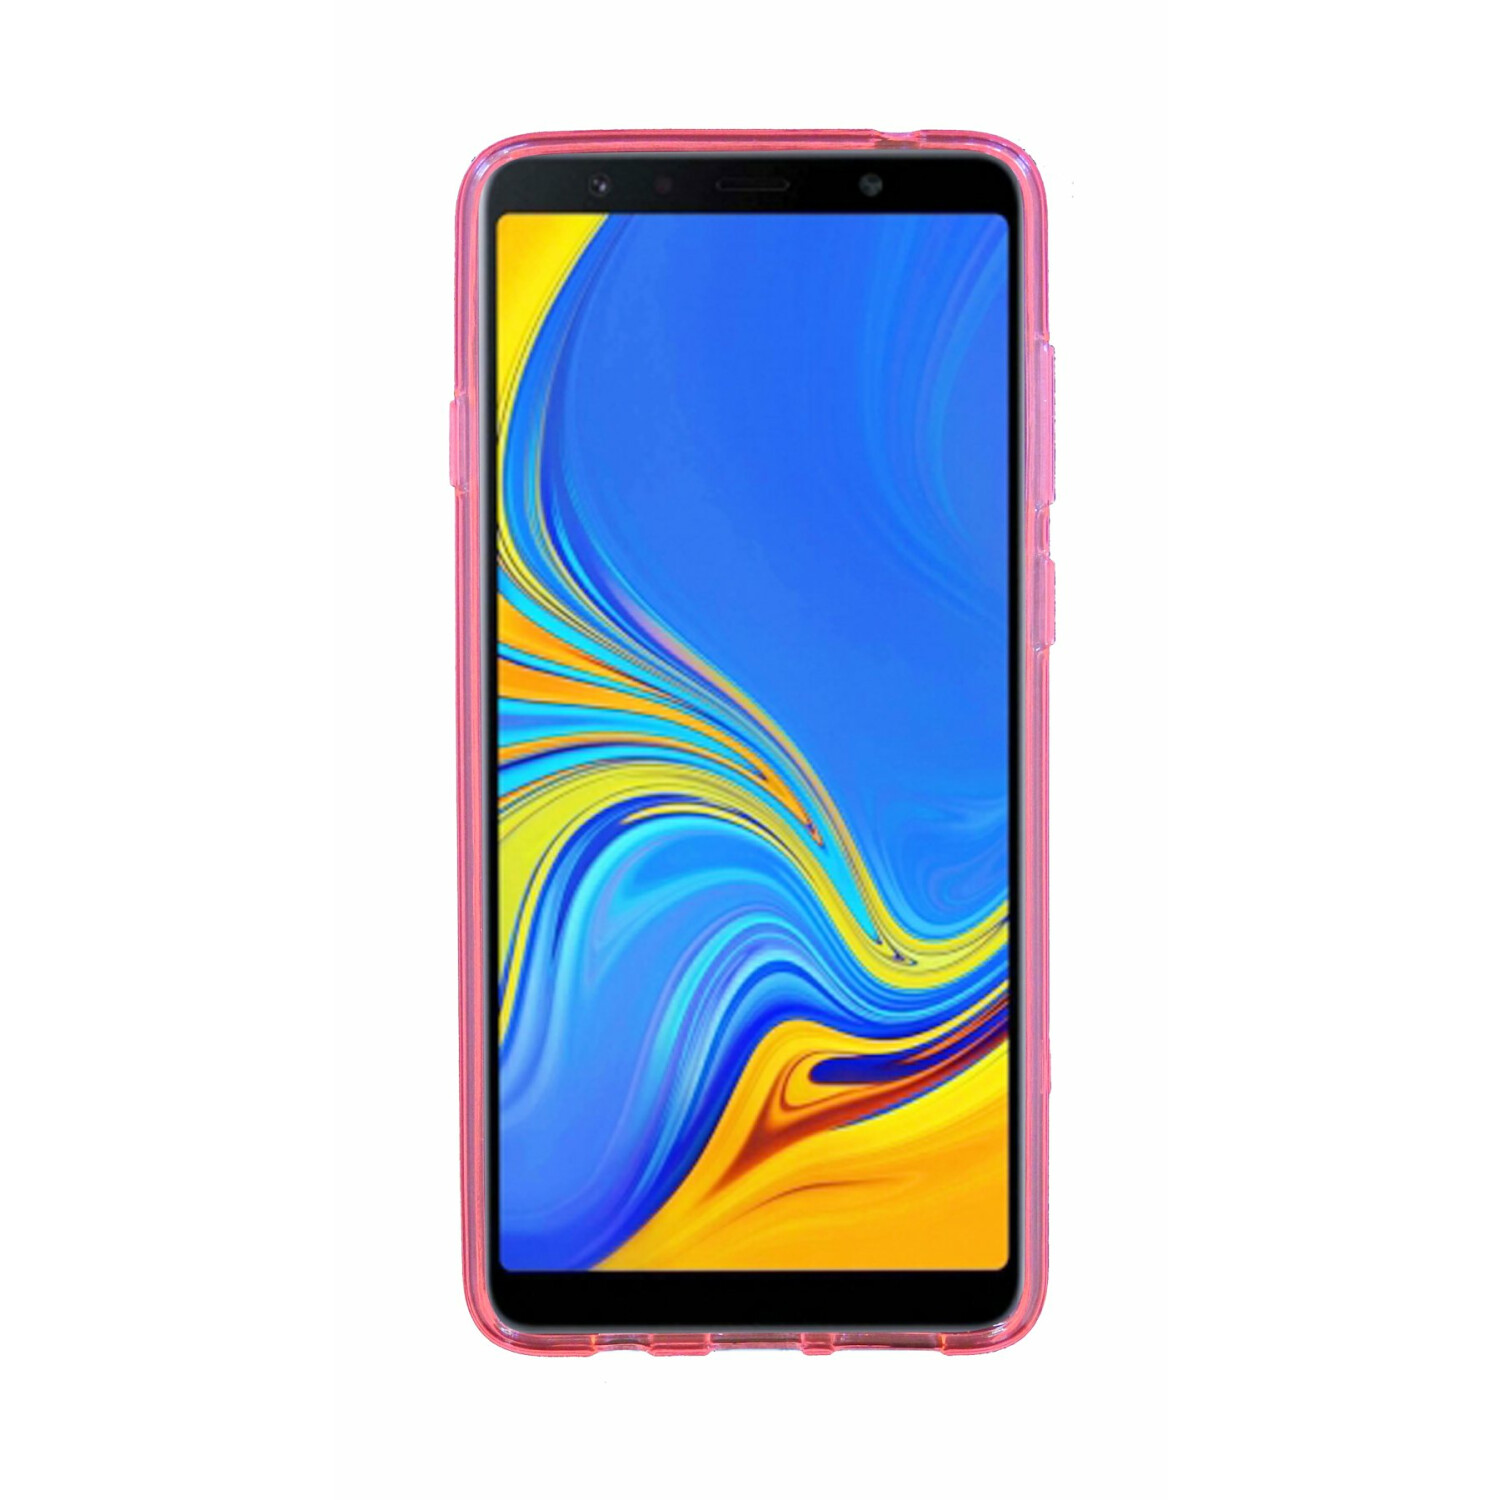 COFI S-Line Cover, Bumper, Samsung, 2018, Rosa A7 Galaxy